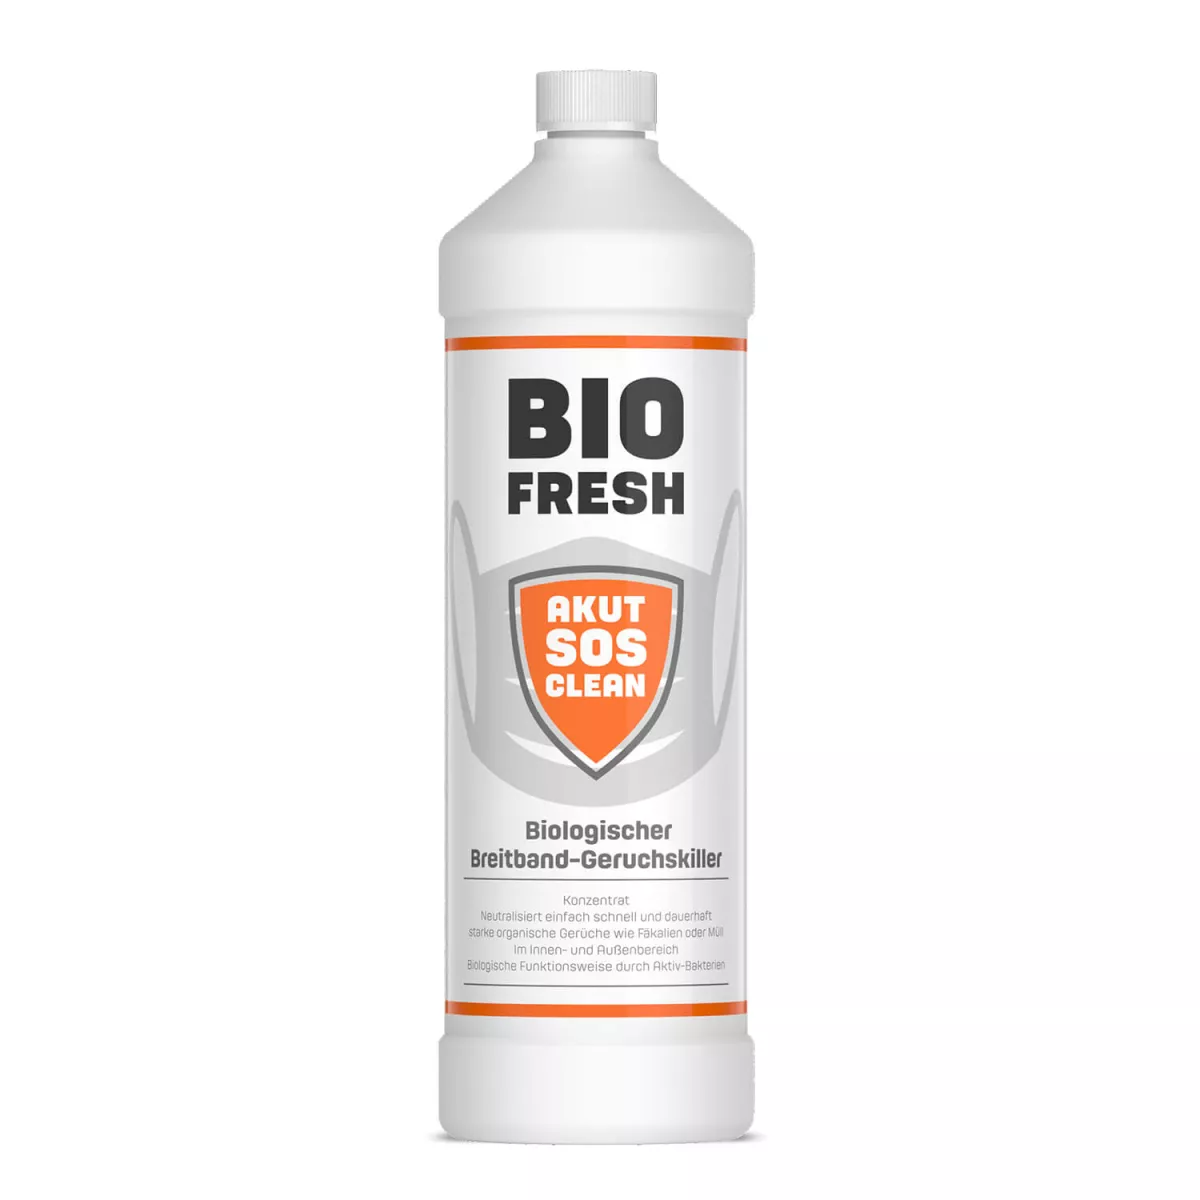 akut sos clean bio fresh biologischer breitband geruchskiller 1l